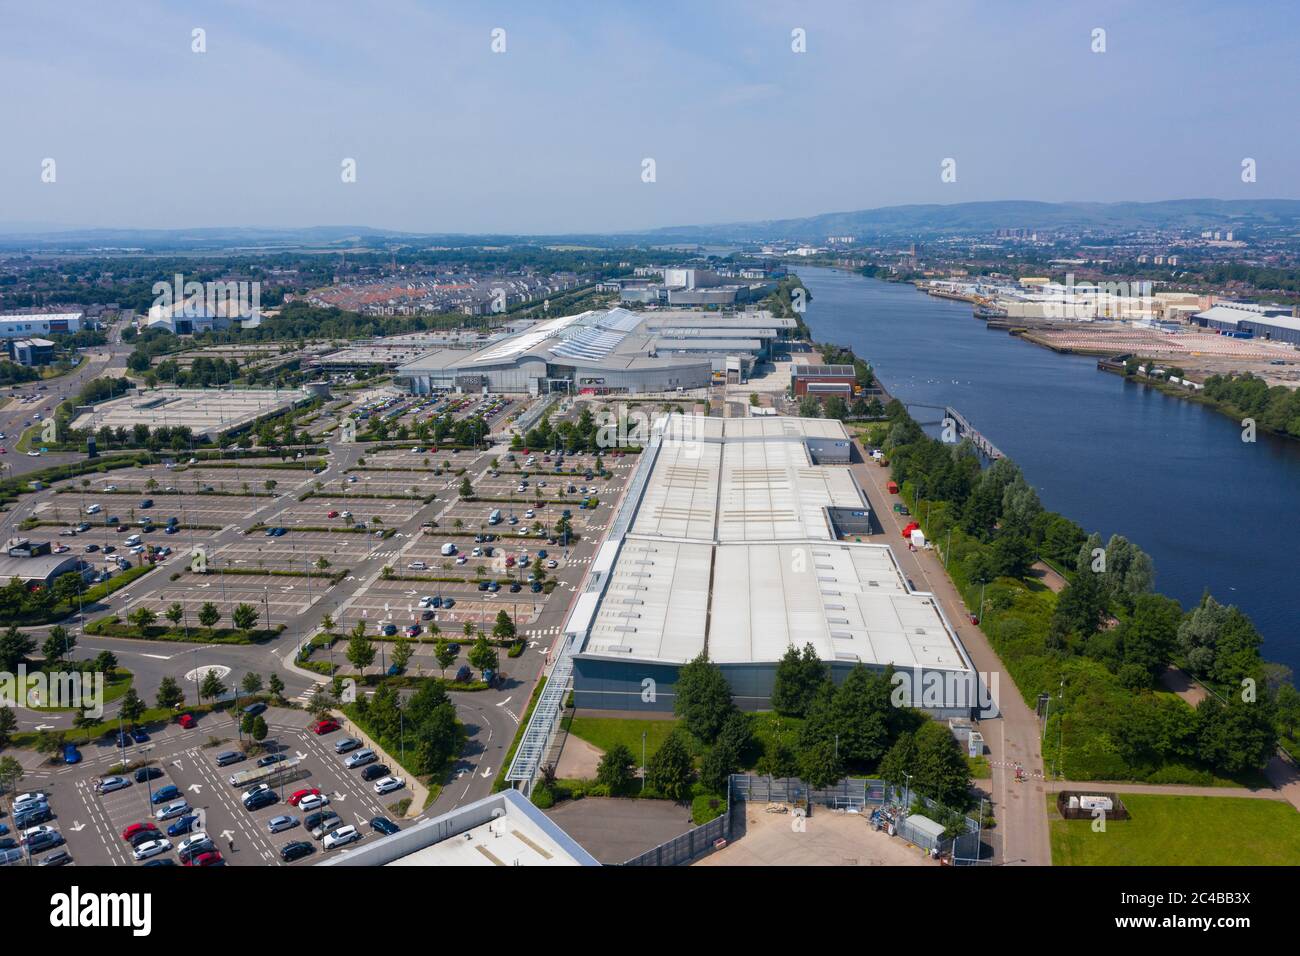 Vue aérienne du centre commercial et du parc commercial Intu Braehead à côté de River Clyde à Glasgow, en Écosse, au Royaume-Uni Banque D'Images